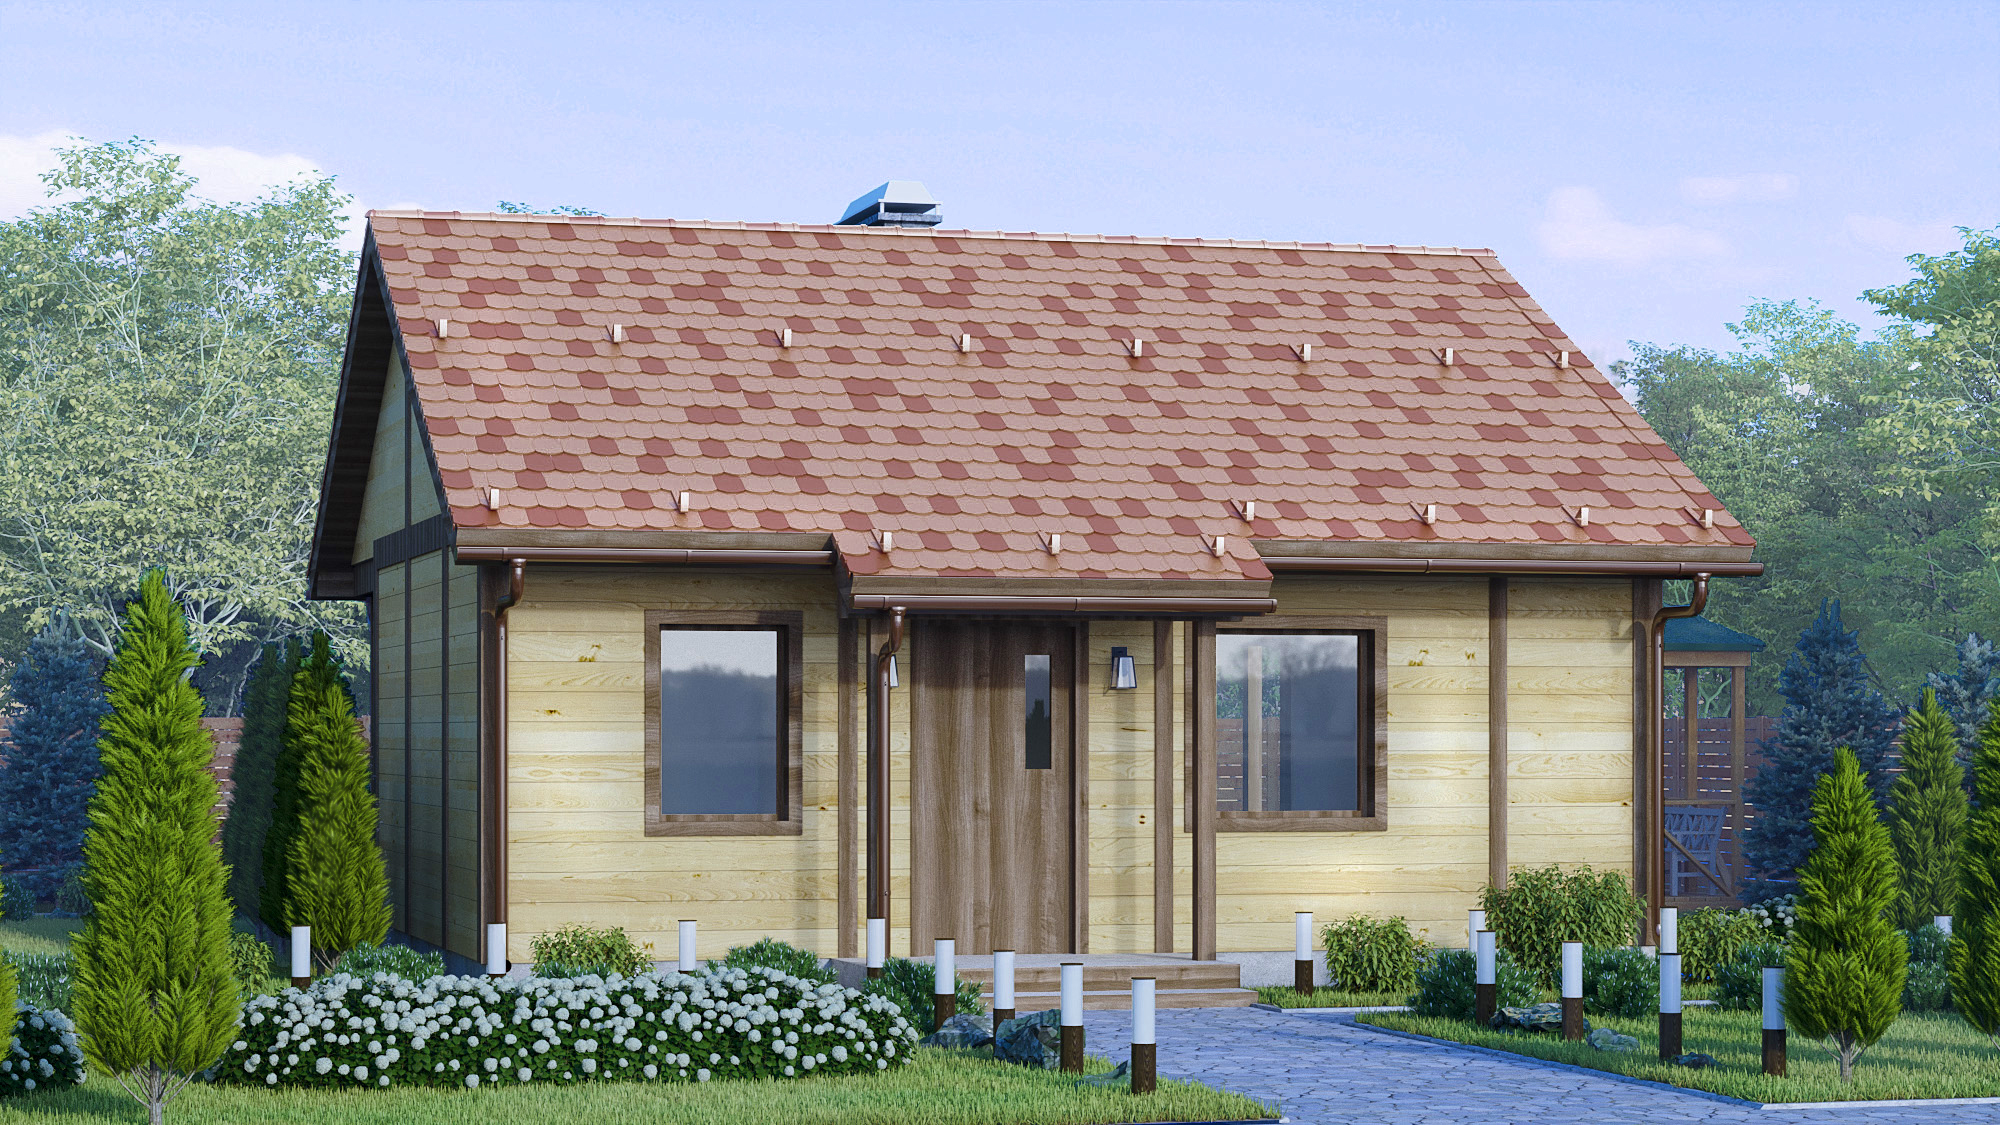 Visualizzazione di una casa di campagna. in 3d max corona render immagine